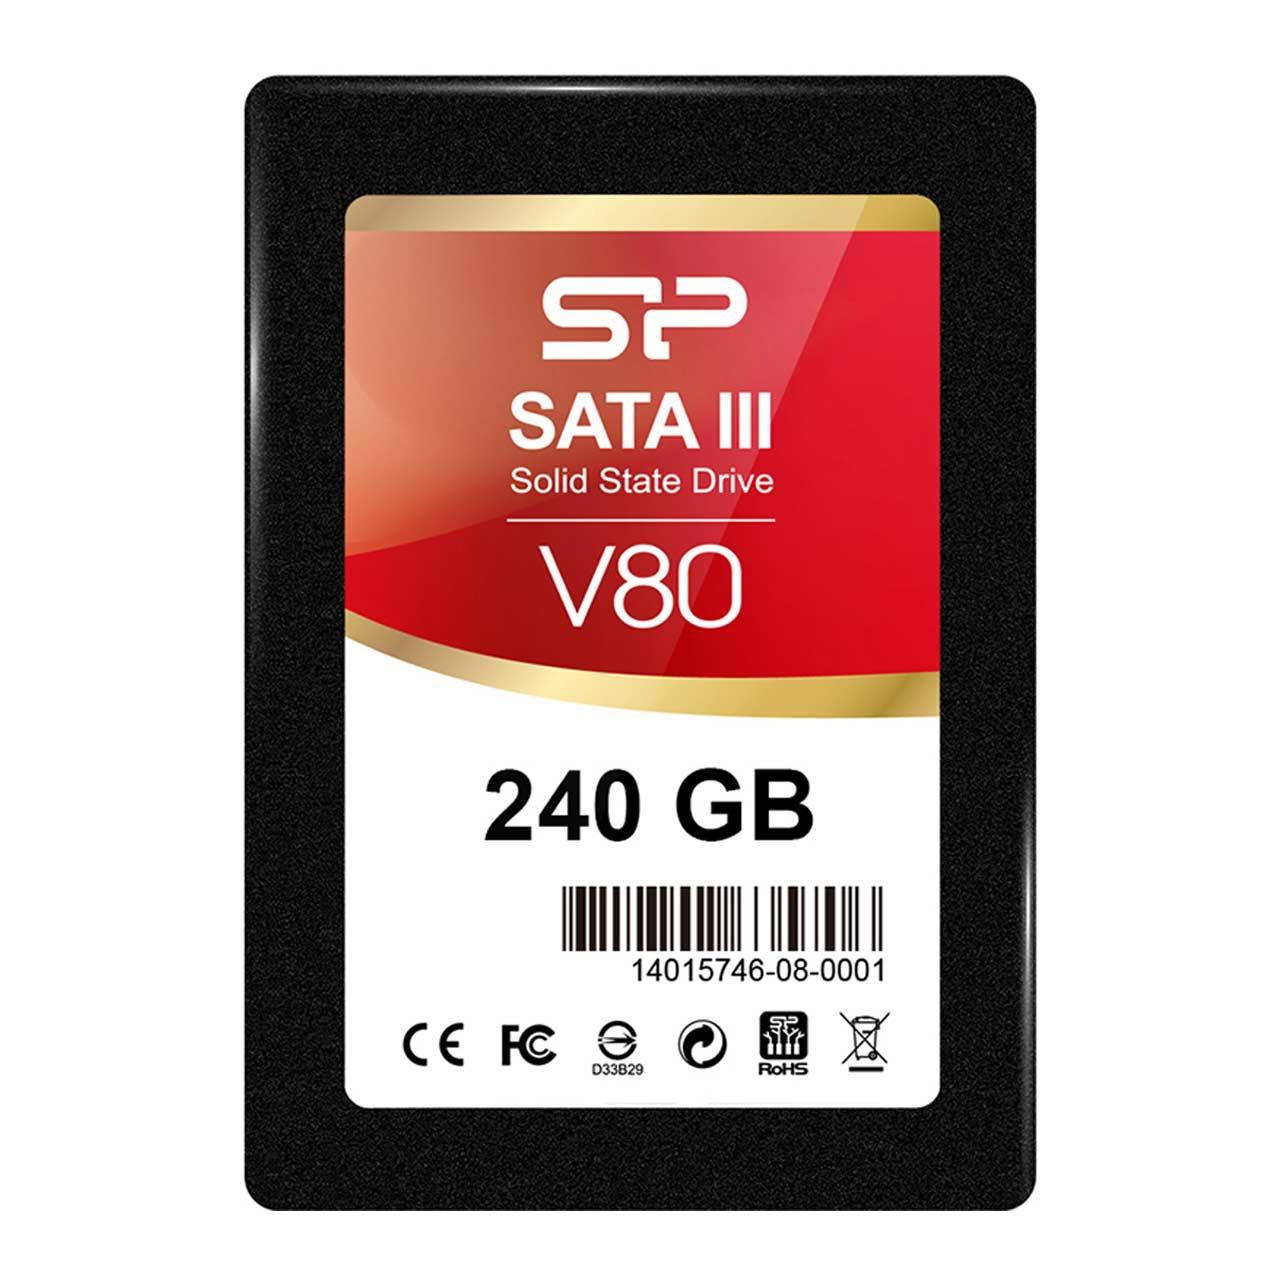 حافظه SSD برند Silicon Power مدل V80 ظرفیت 240 گیگابایت 

Silicon Power V80 SATA III SSD - 240GB